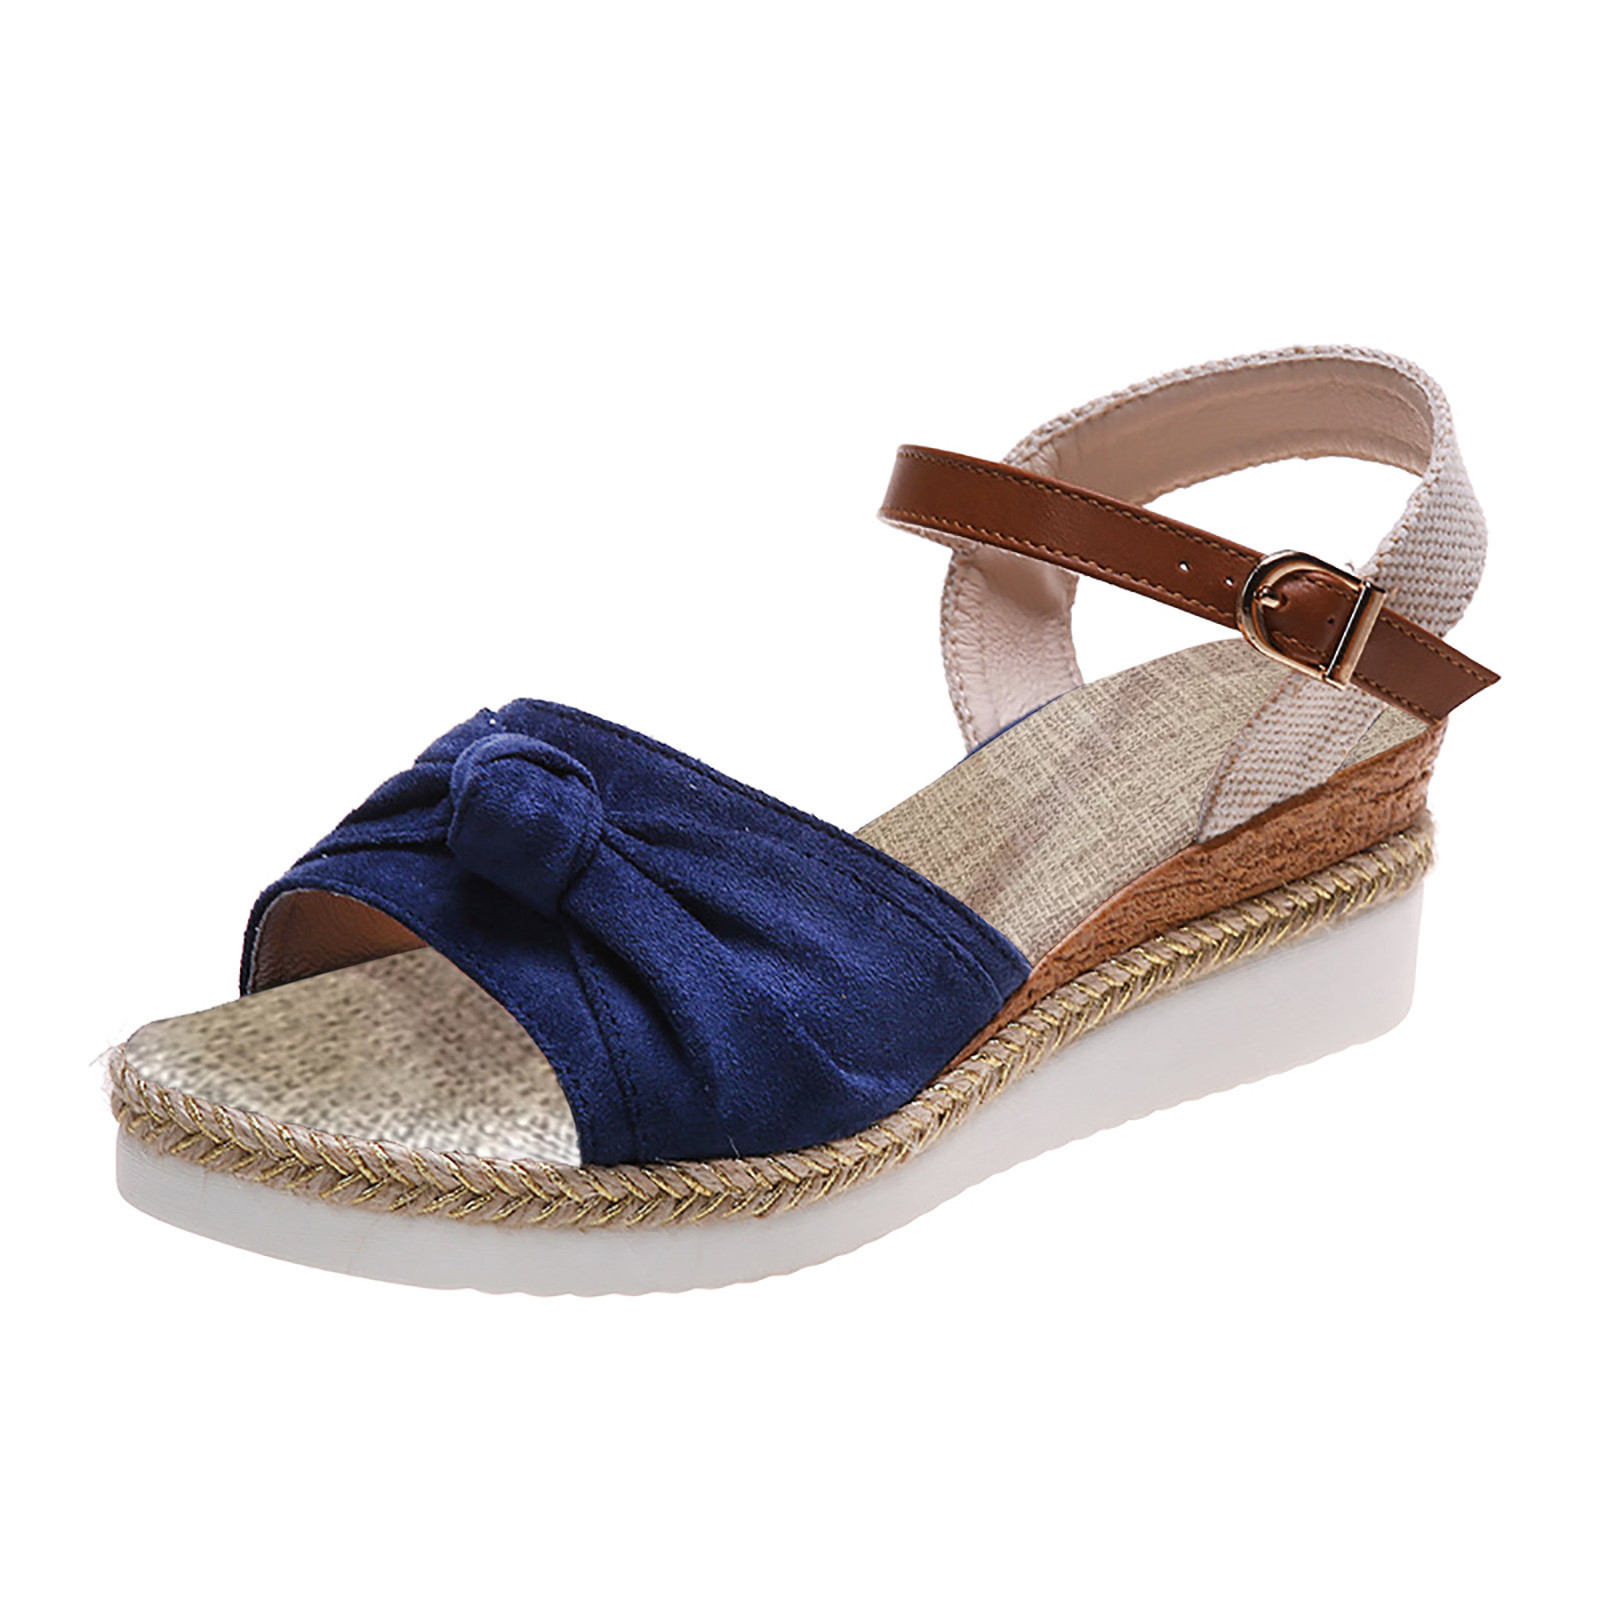 AOMPMSDX Sandals Women Comfortable Color Block Knot Detail Espadrille ...